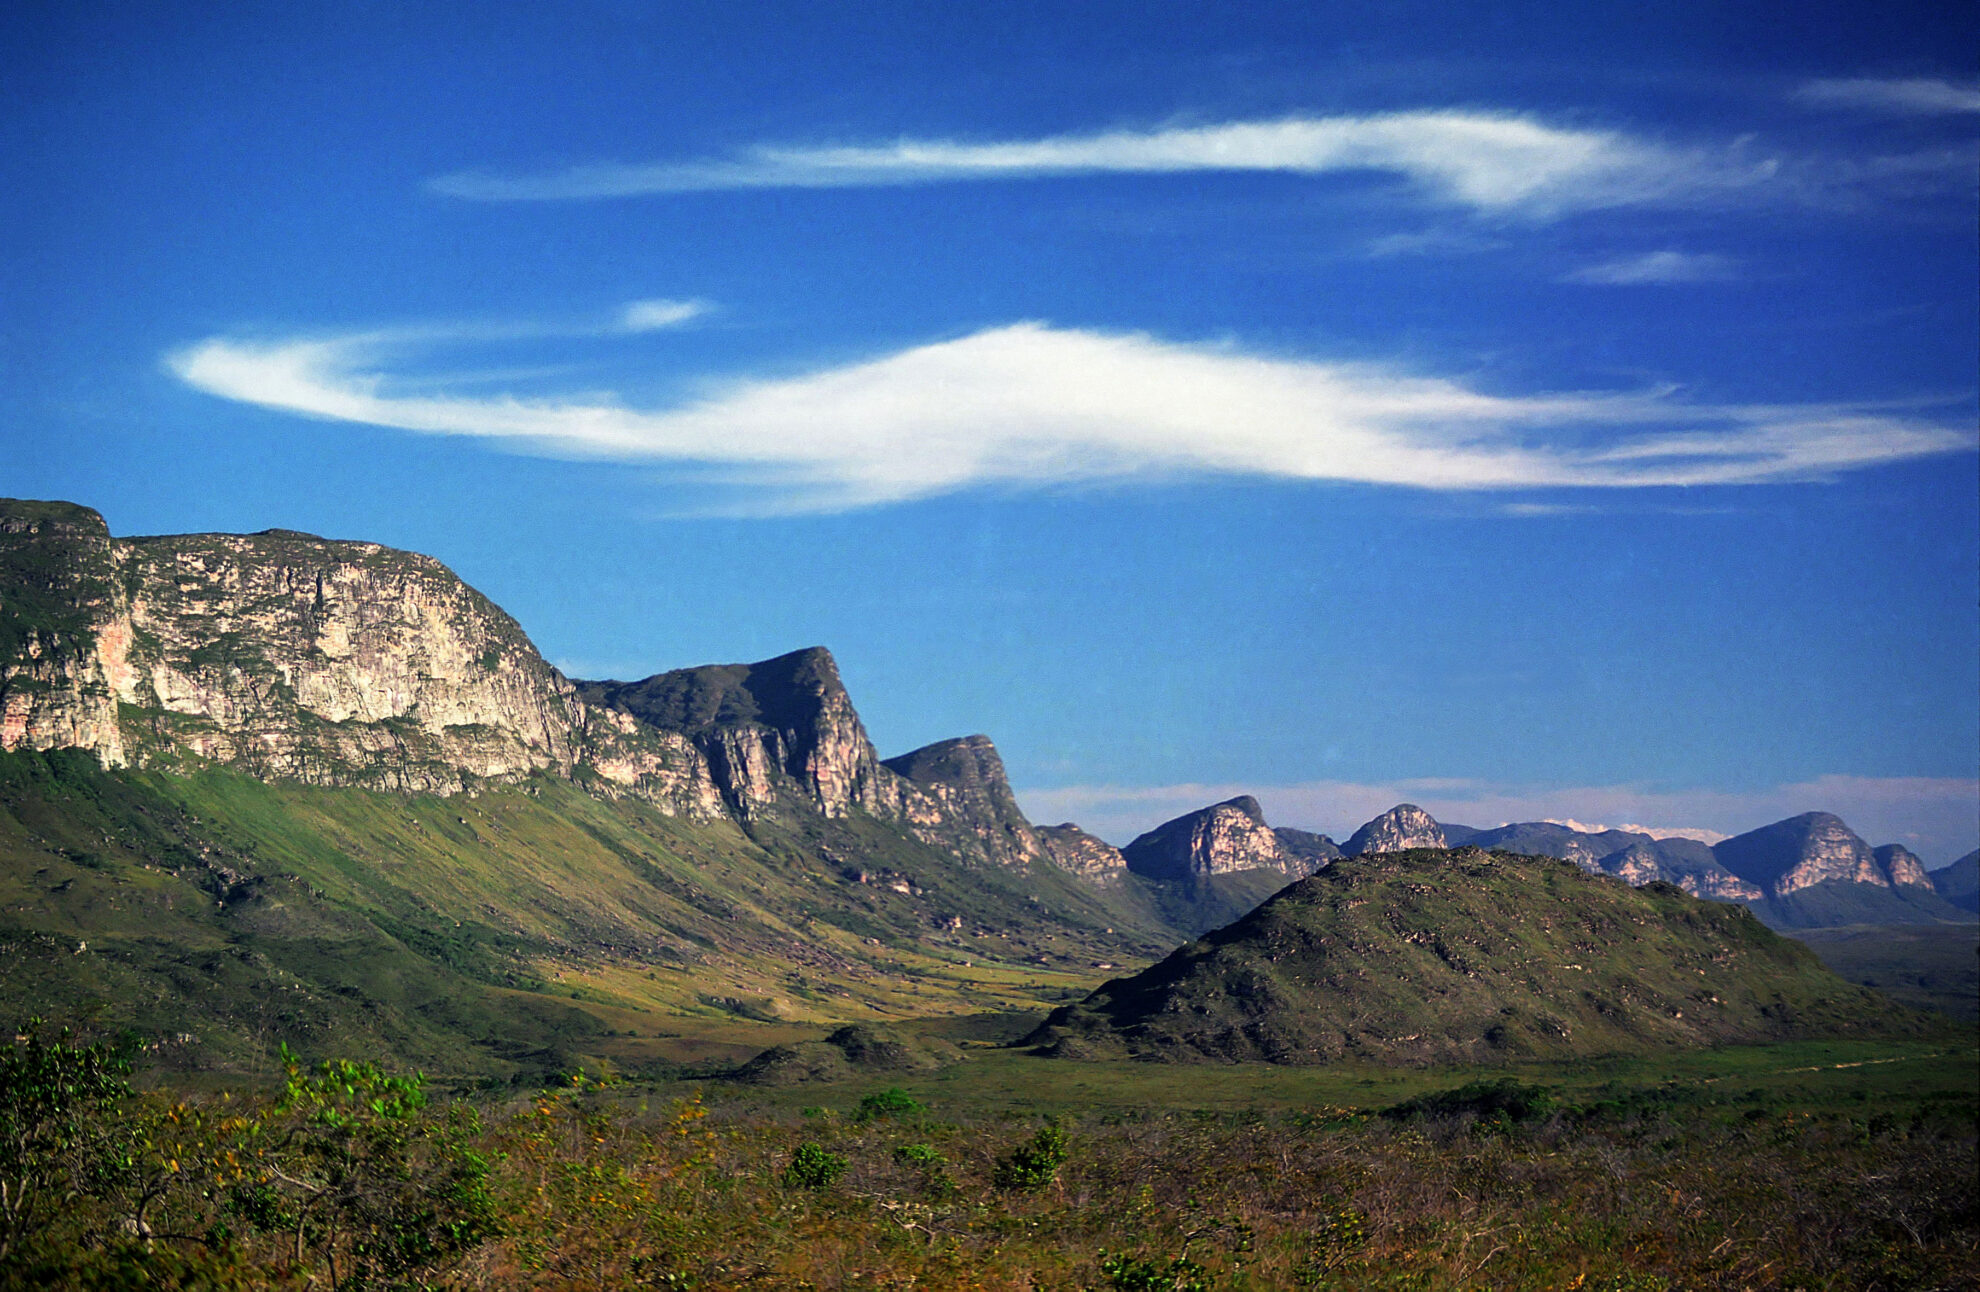 Conheça o Parque Nacional da Chapada Diamantina (BA)